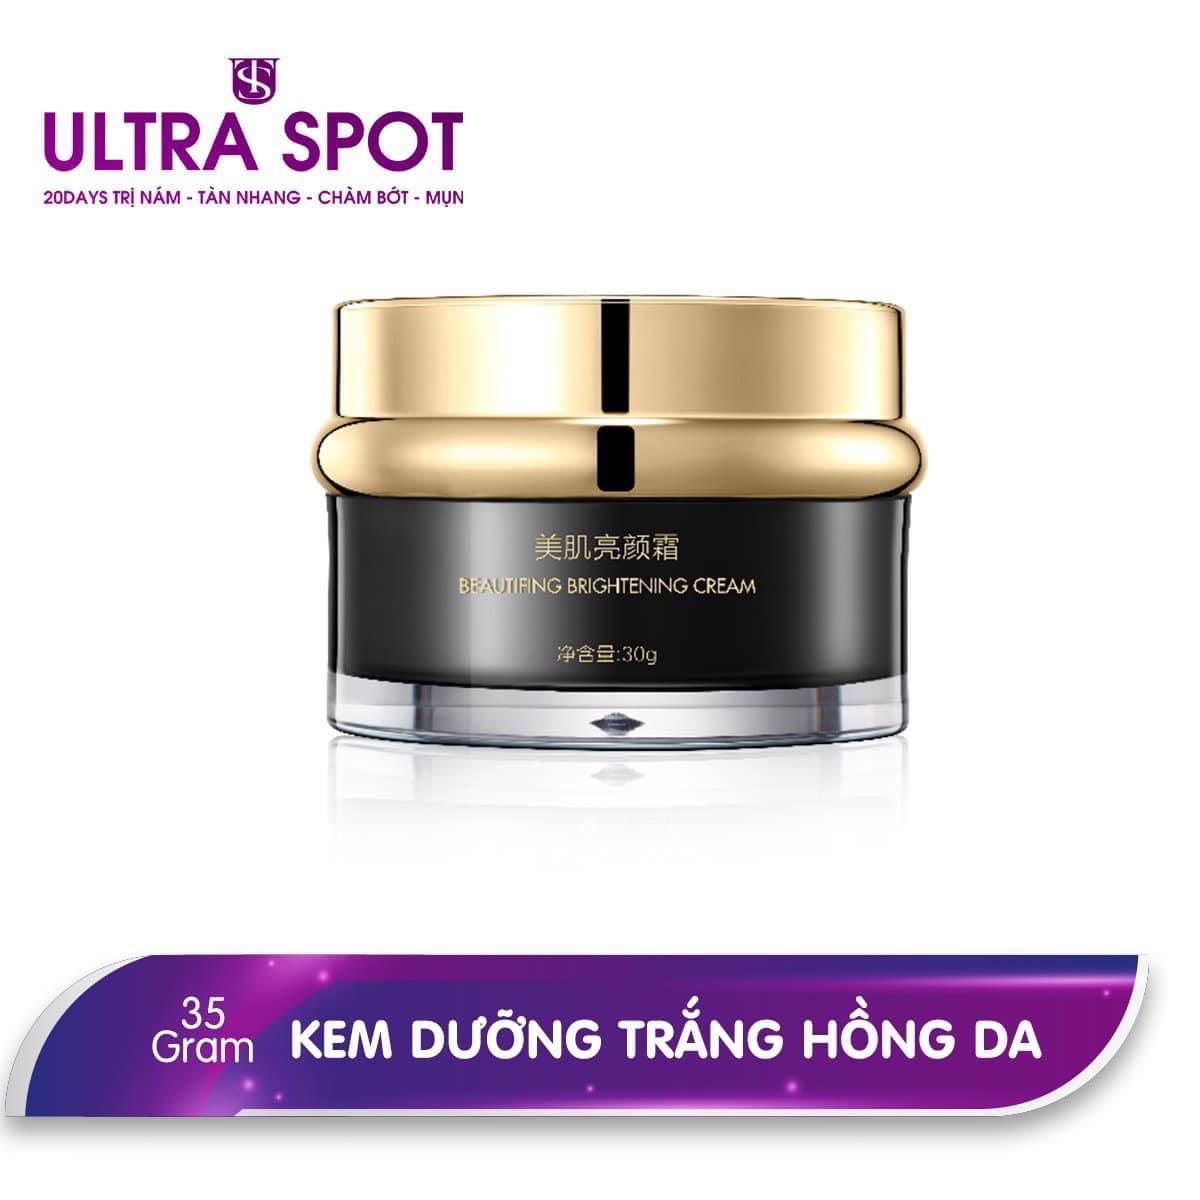 ULTRA SPOT Beautifying Brightening Cream – Kem dưỡng trắng hồng da ULTRA SPOT là sản phẩm rất được ưa chuộng nhờ khả năng làm trắng nhanh và an toàn